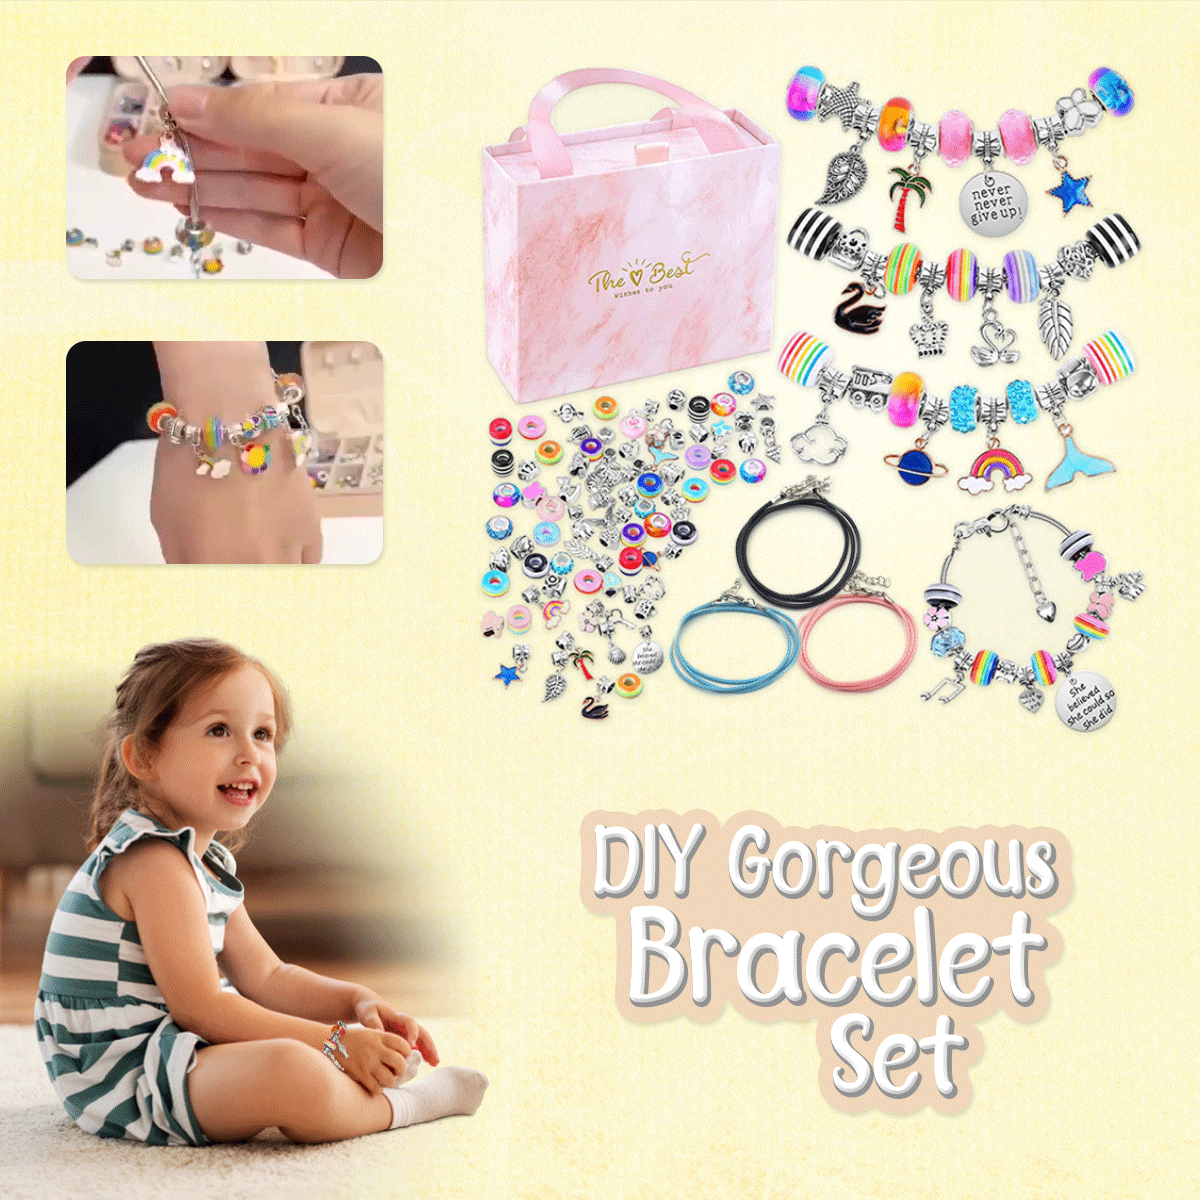 DIY Gorgeous Bracelet Set